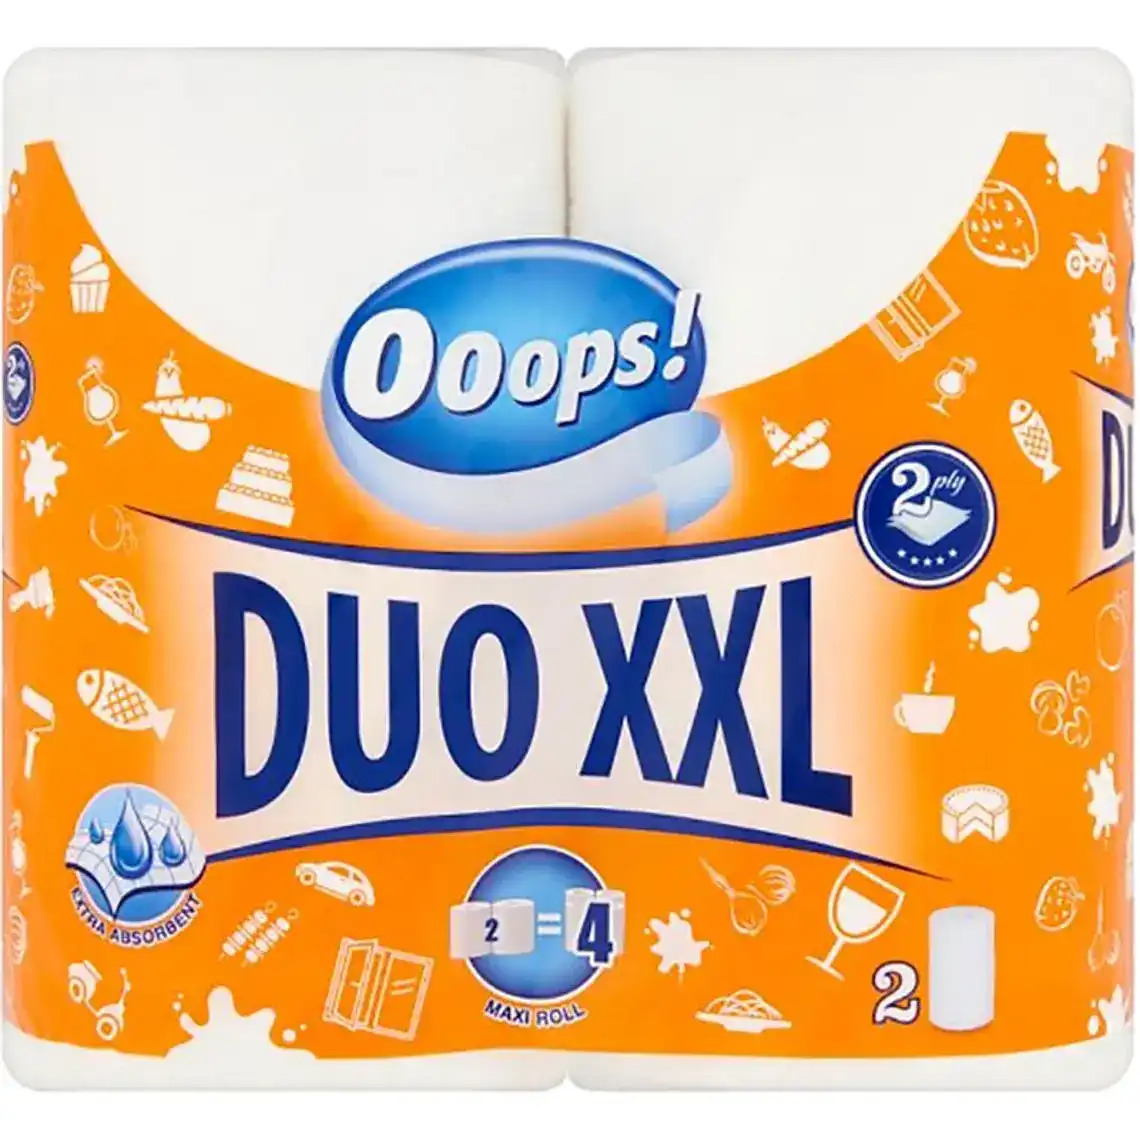 Рушник паперовий Ooops! Duo XXL 2-х шаровий 2 шт.